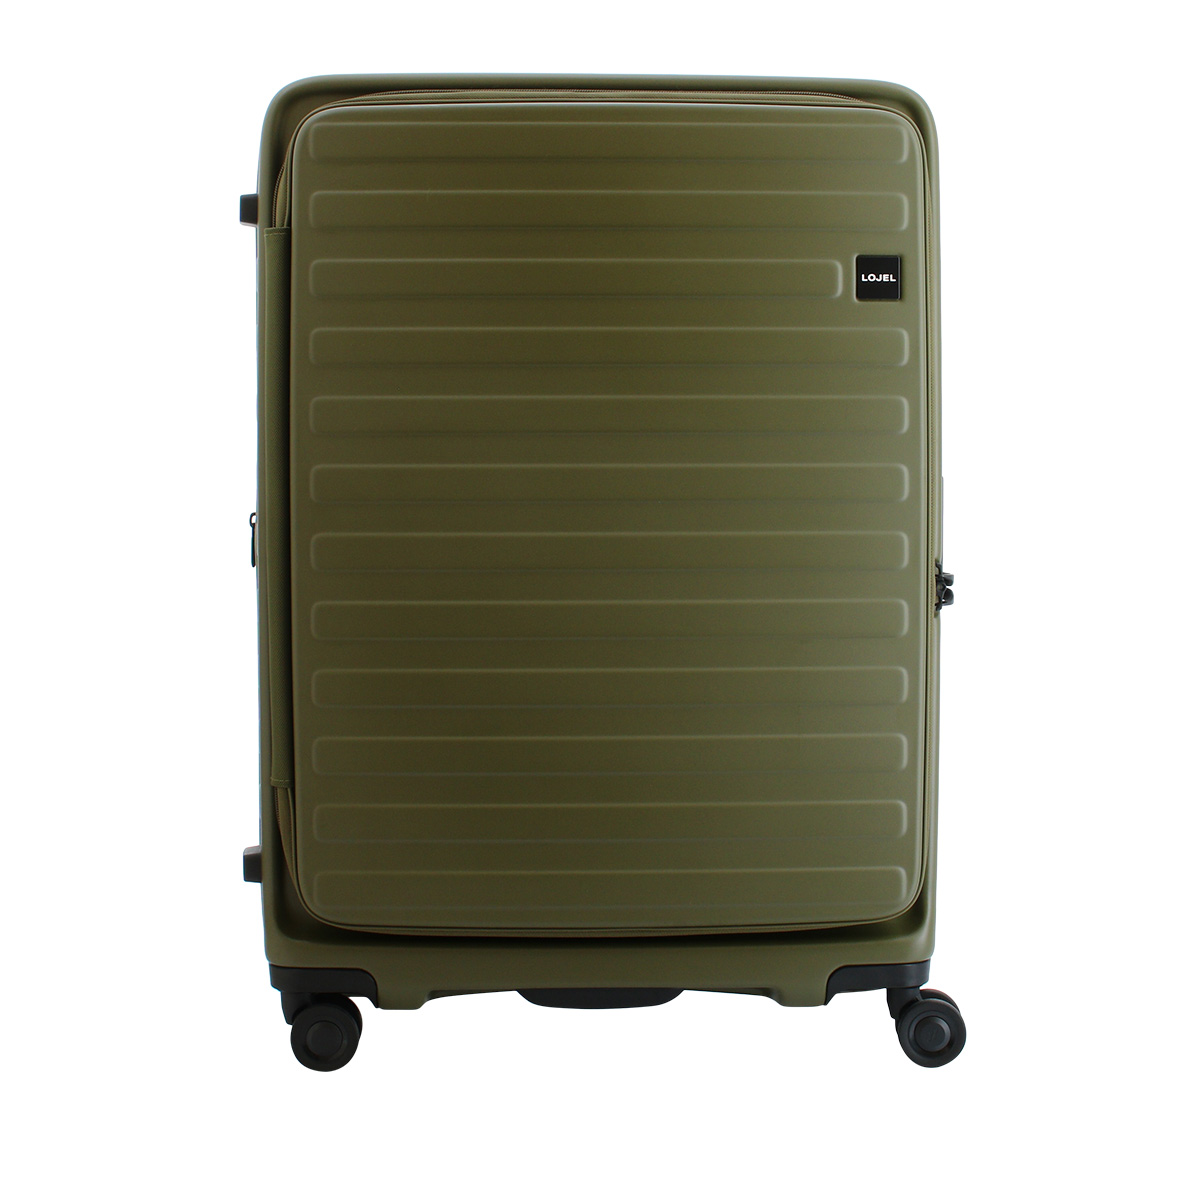 ロジェール LOJEL スーツケース CUBO-L 71cm キャリーケース キャリーバッグ ビジネスキャリー 拡張機能 エクスパンダブル  双輪キャスター TSAロック搭載